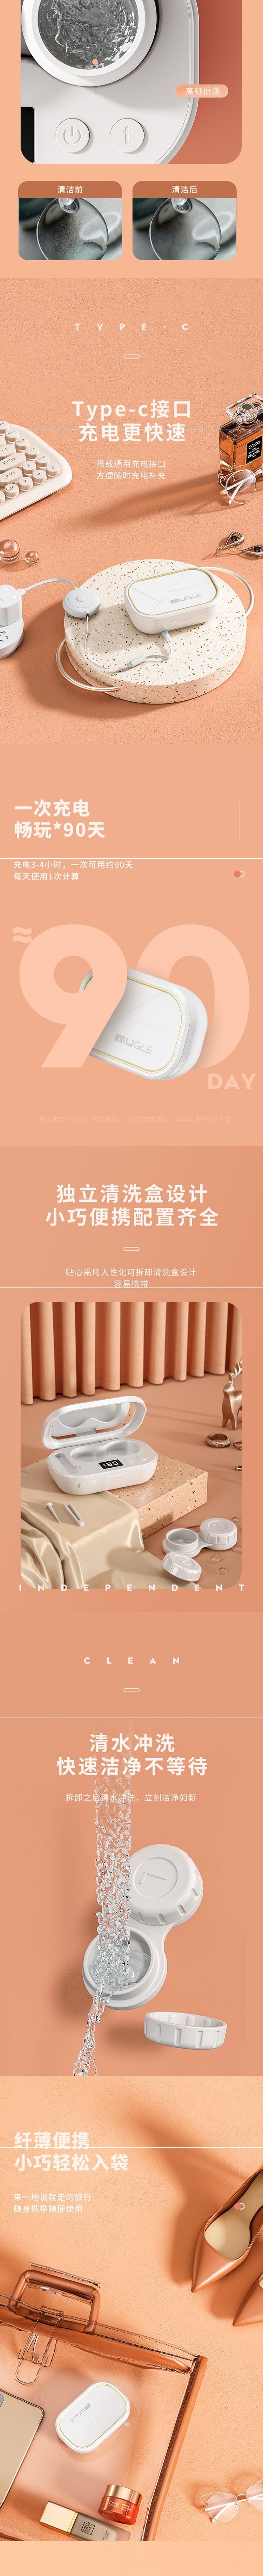 【中国直邮】柏意美瞳隐形眼镜清洗盒清洗器 标准款 超声波智能自动清洗杀菌